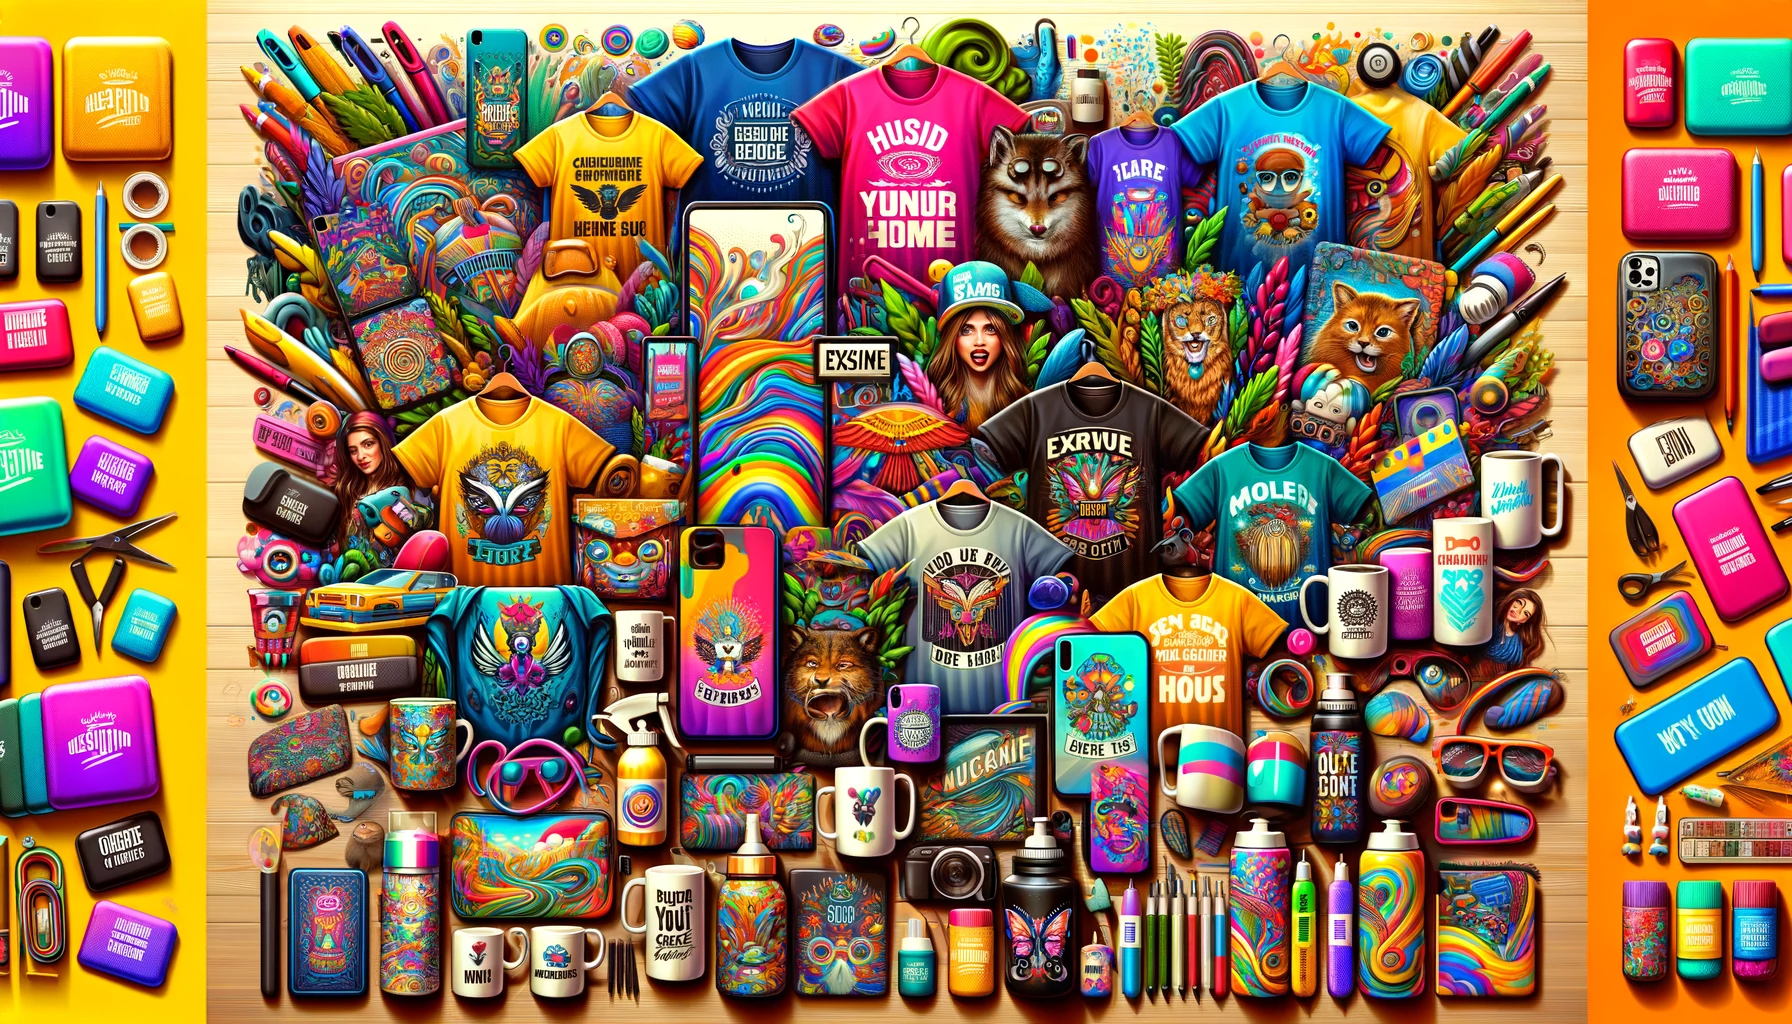 Variedade de produtos personalizáveis incluindo t-shirts, canecas e capas de celular com designs únicos.